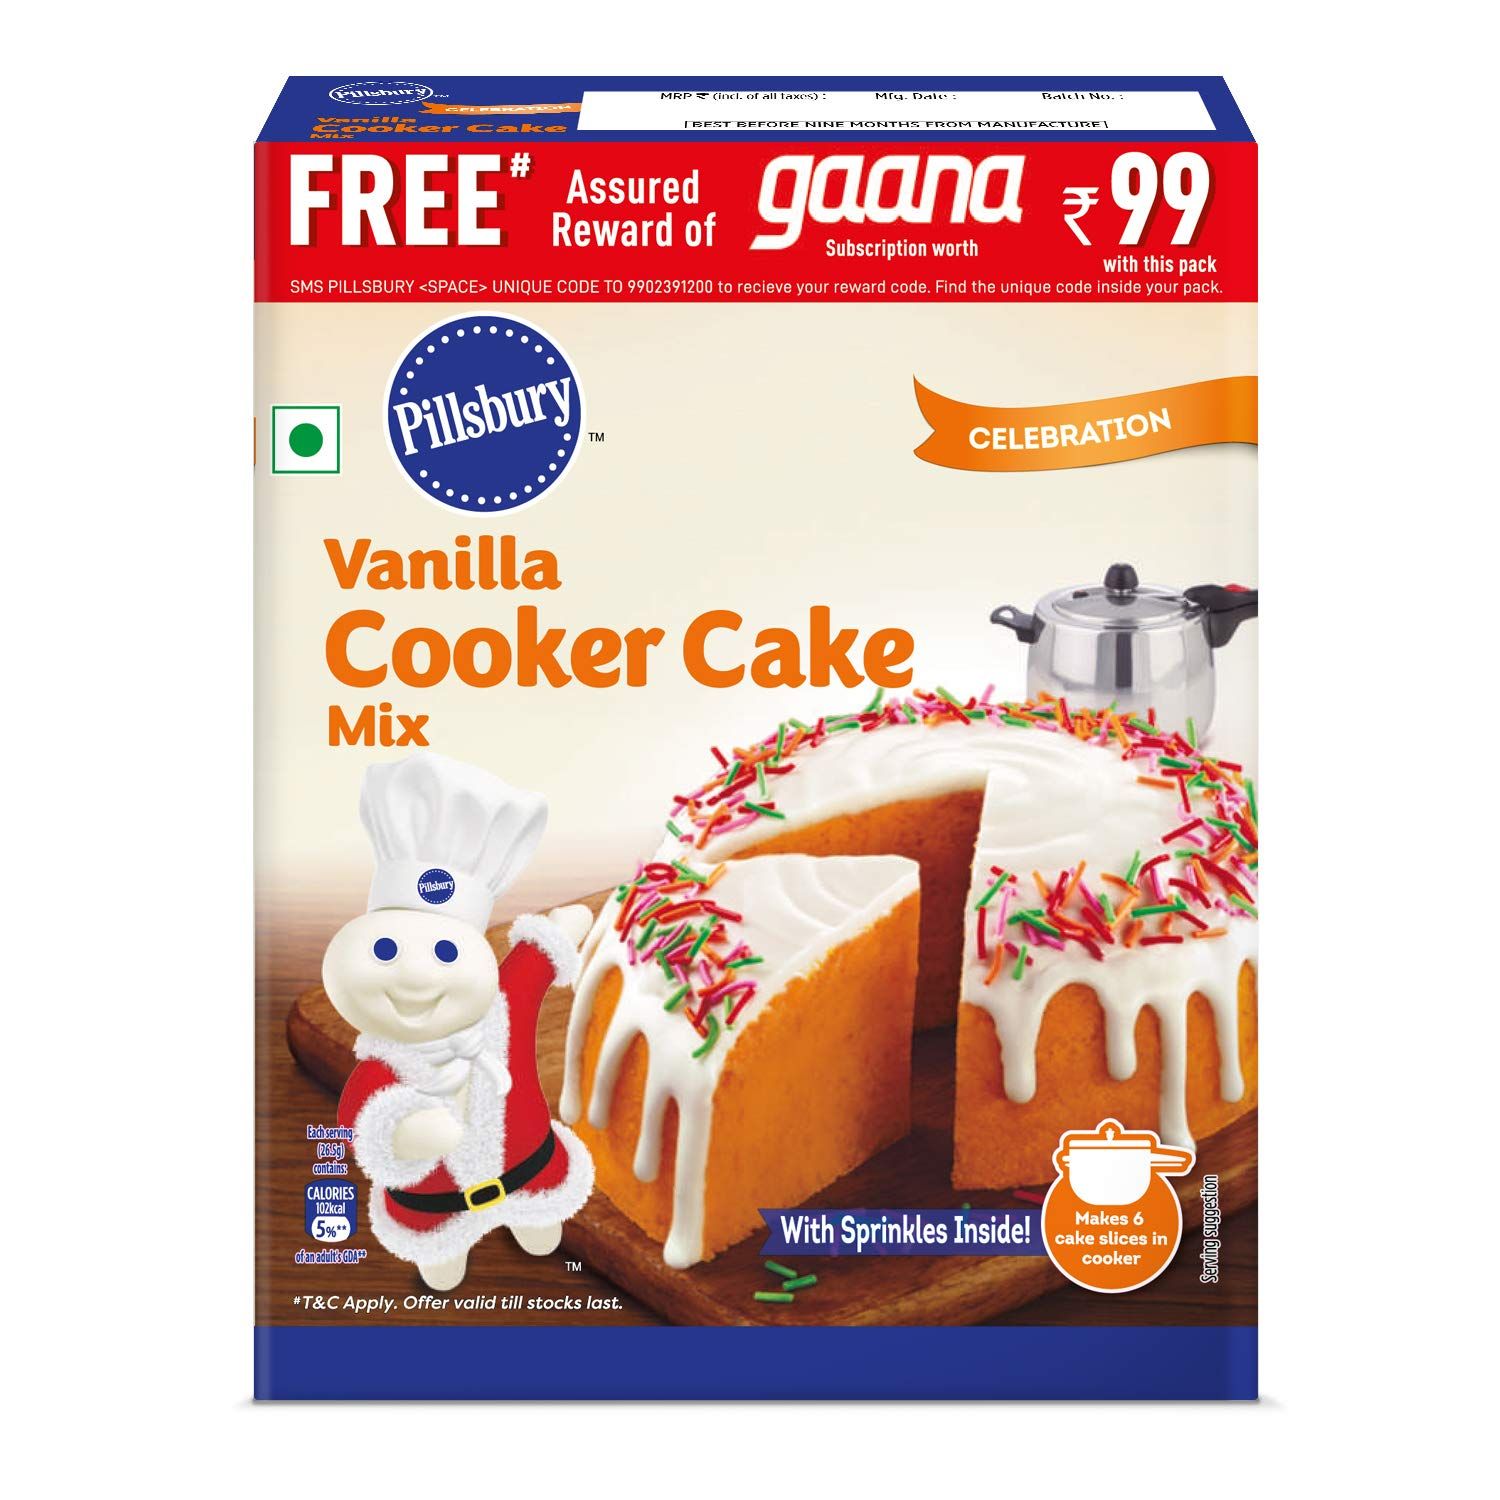 Pillsbury Cooker Cake Mix - Vanilla (Eggless) - 159g x Pack of 4, 636g -  May 10, 2020